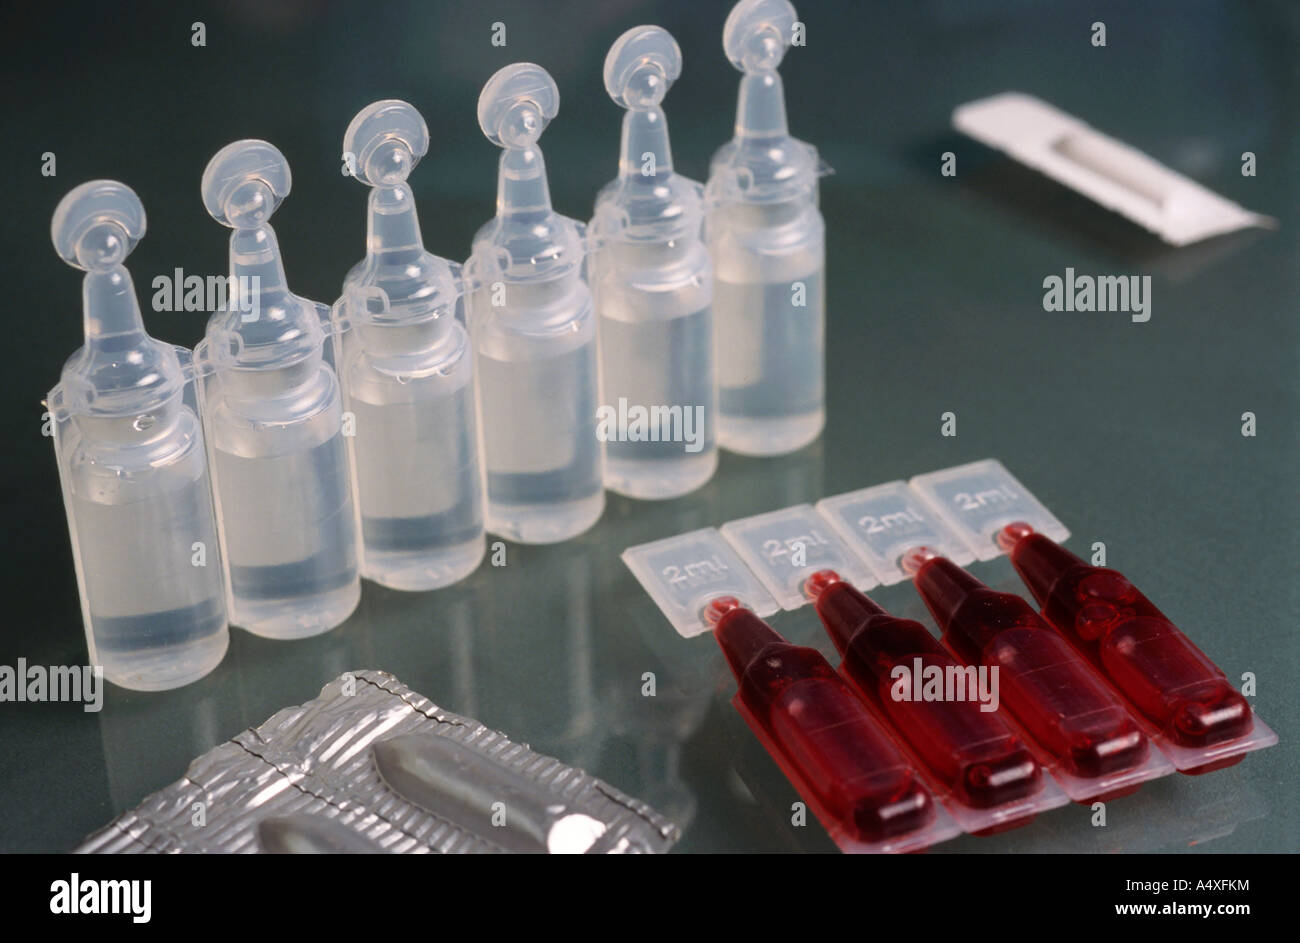 Les bouteilles de sérum physiologique médical Photo Stock - Alamy